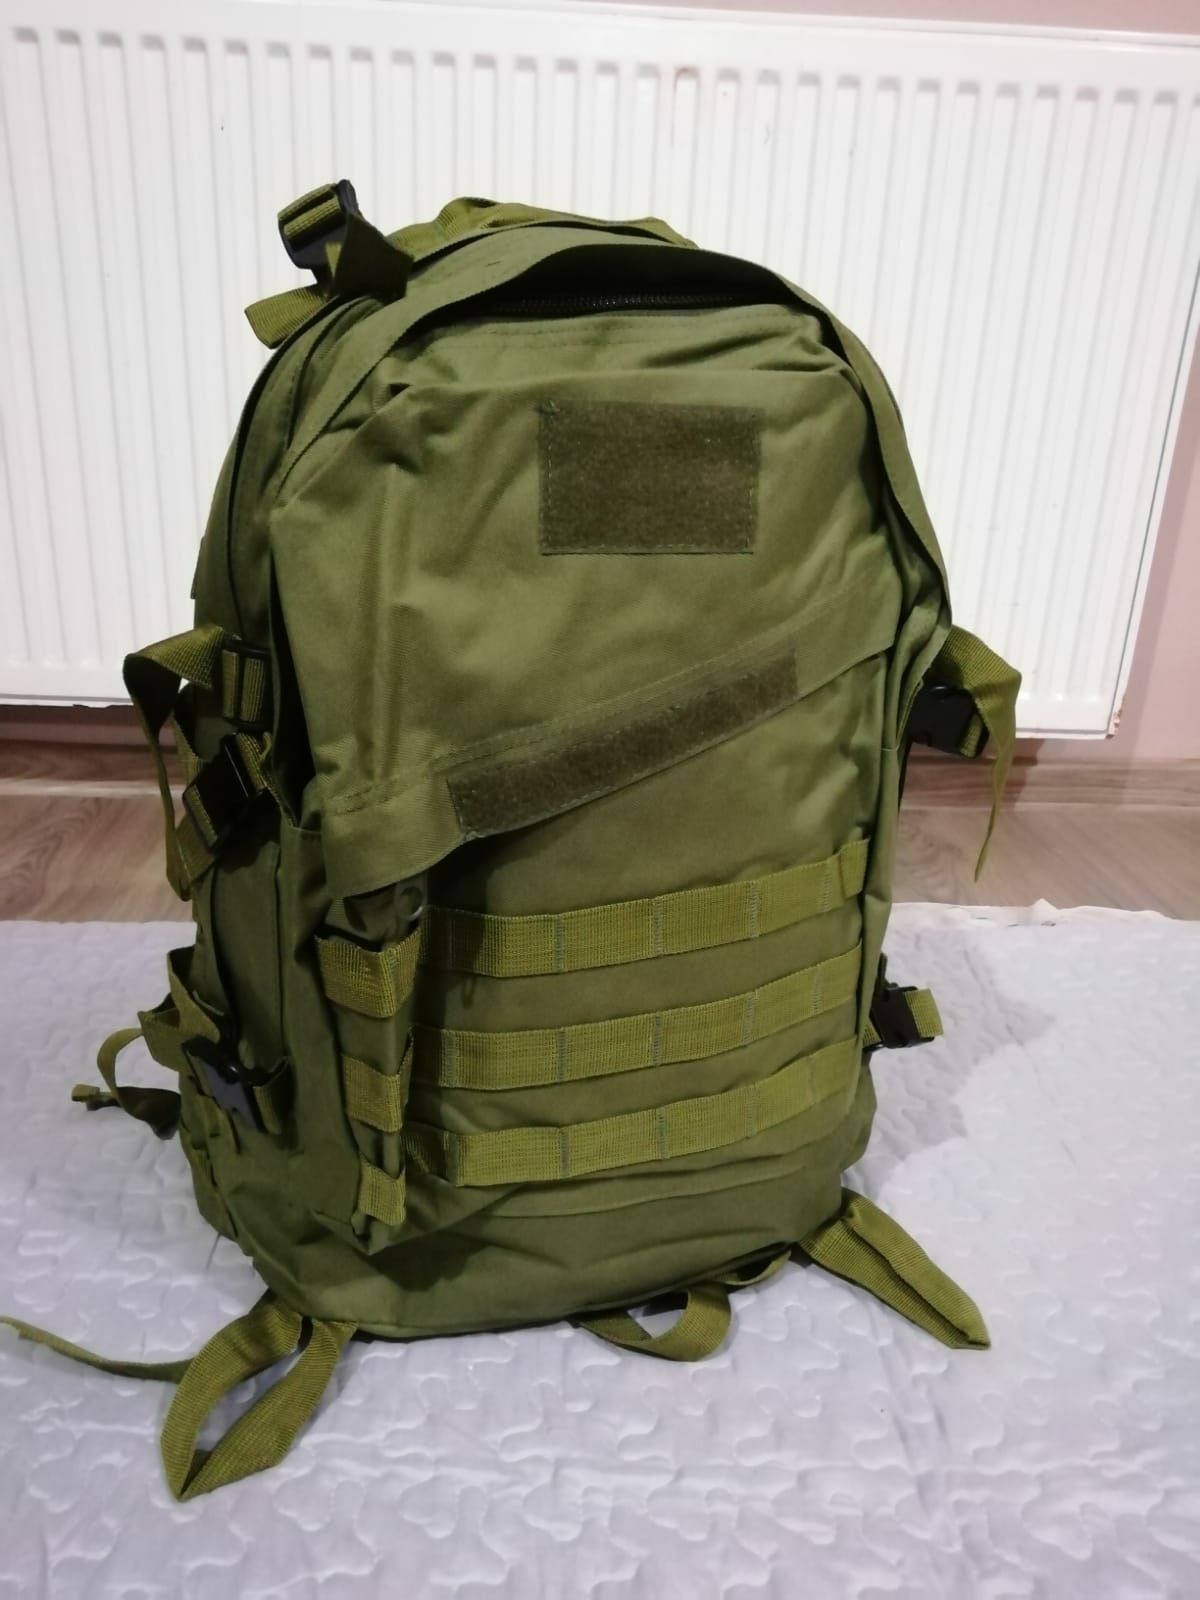 Nowy duży plecak wojskowy zielony turystyczny męski damski 45l.